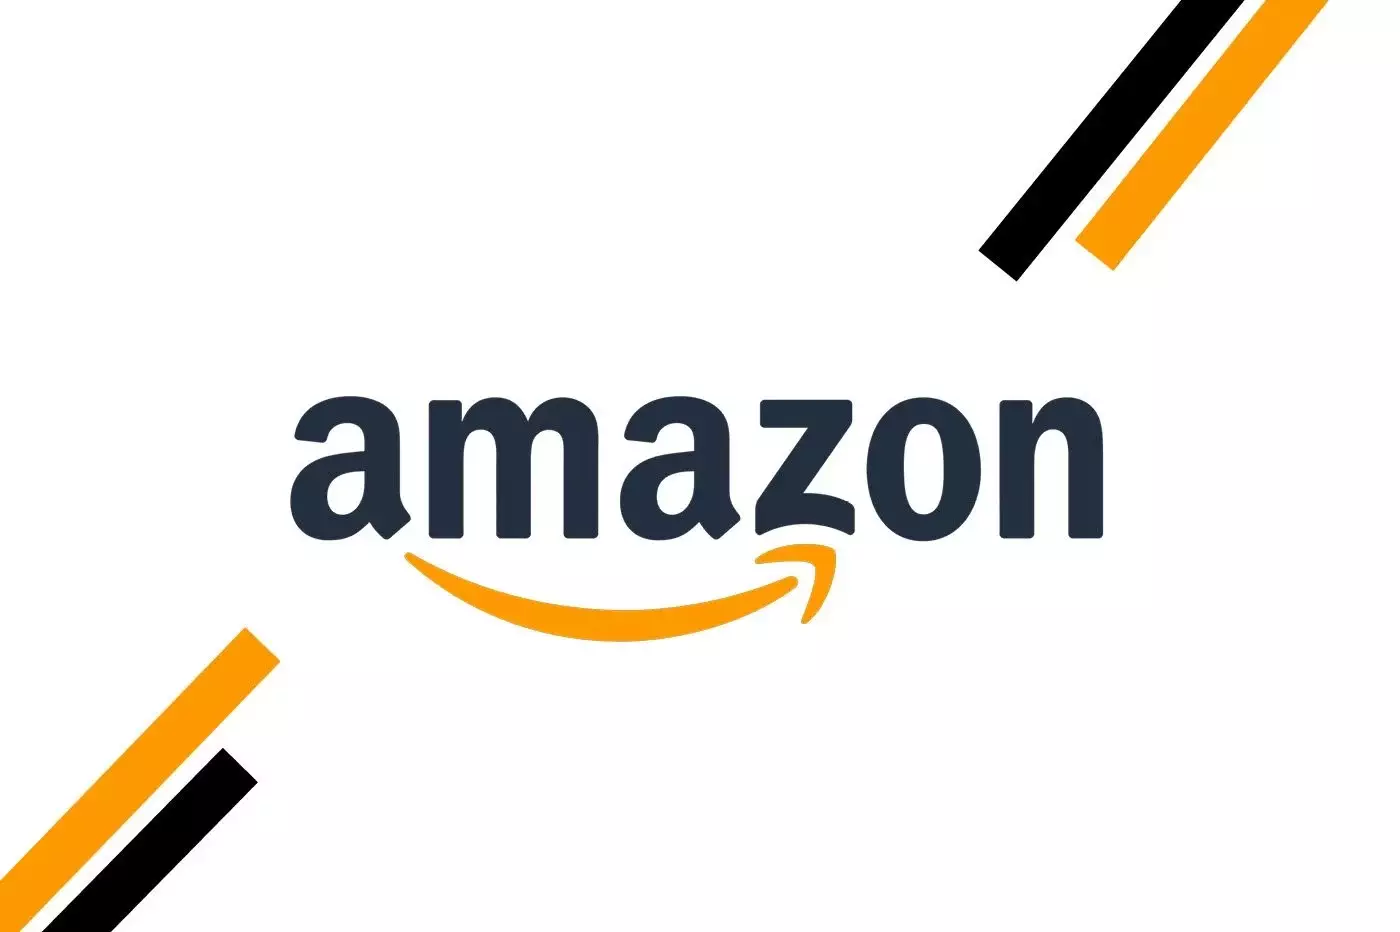 Amazon veut aider les start-ups « durables », un vrai choix écologique ?